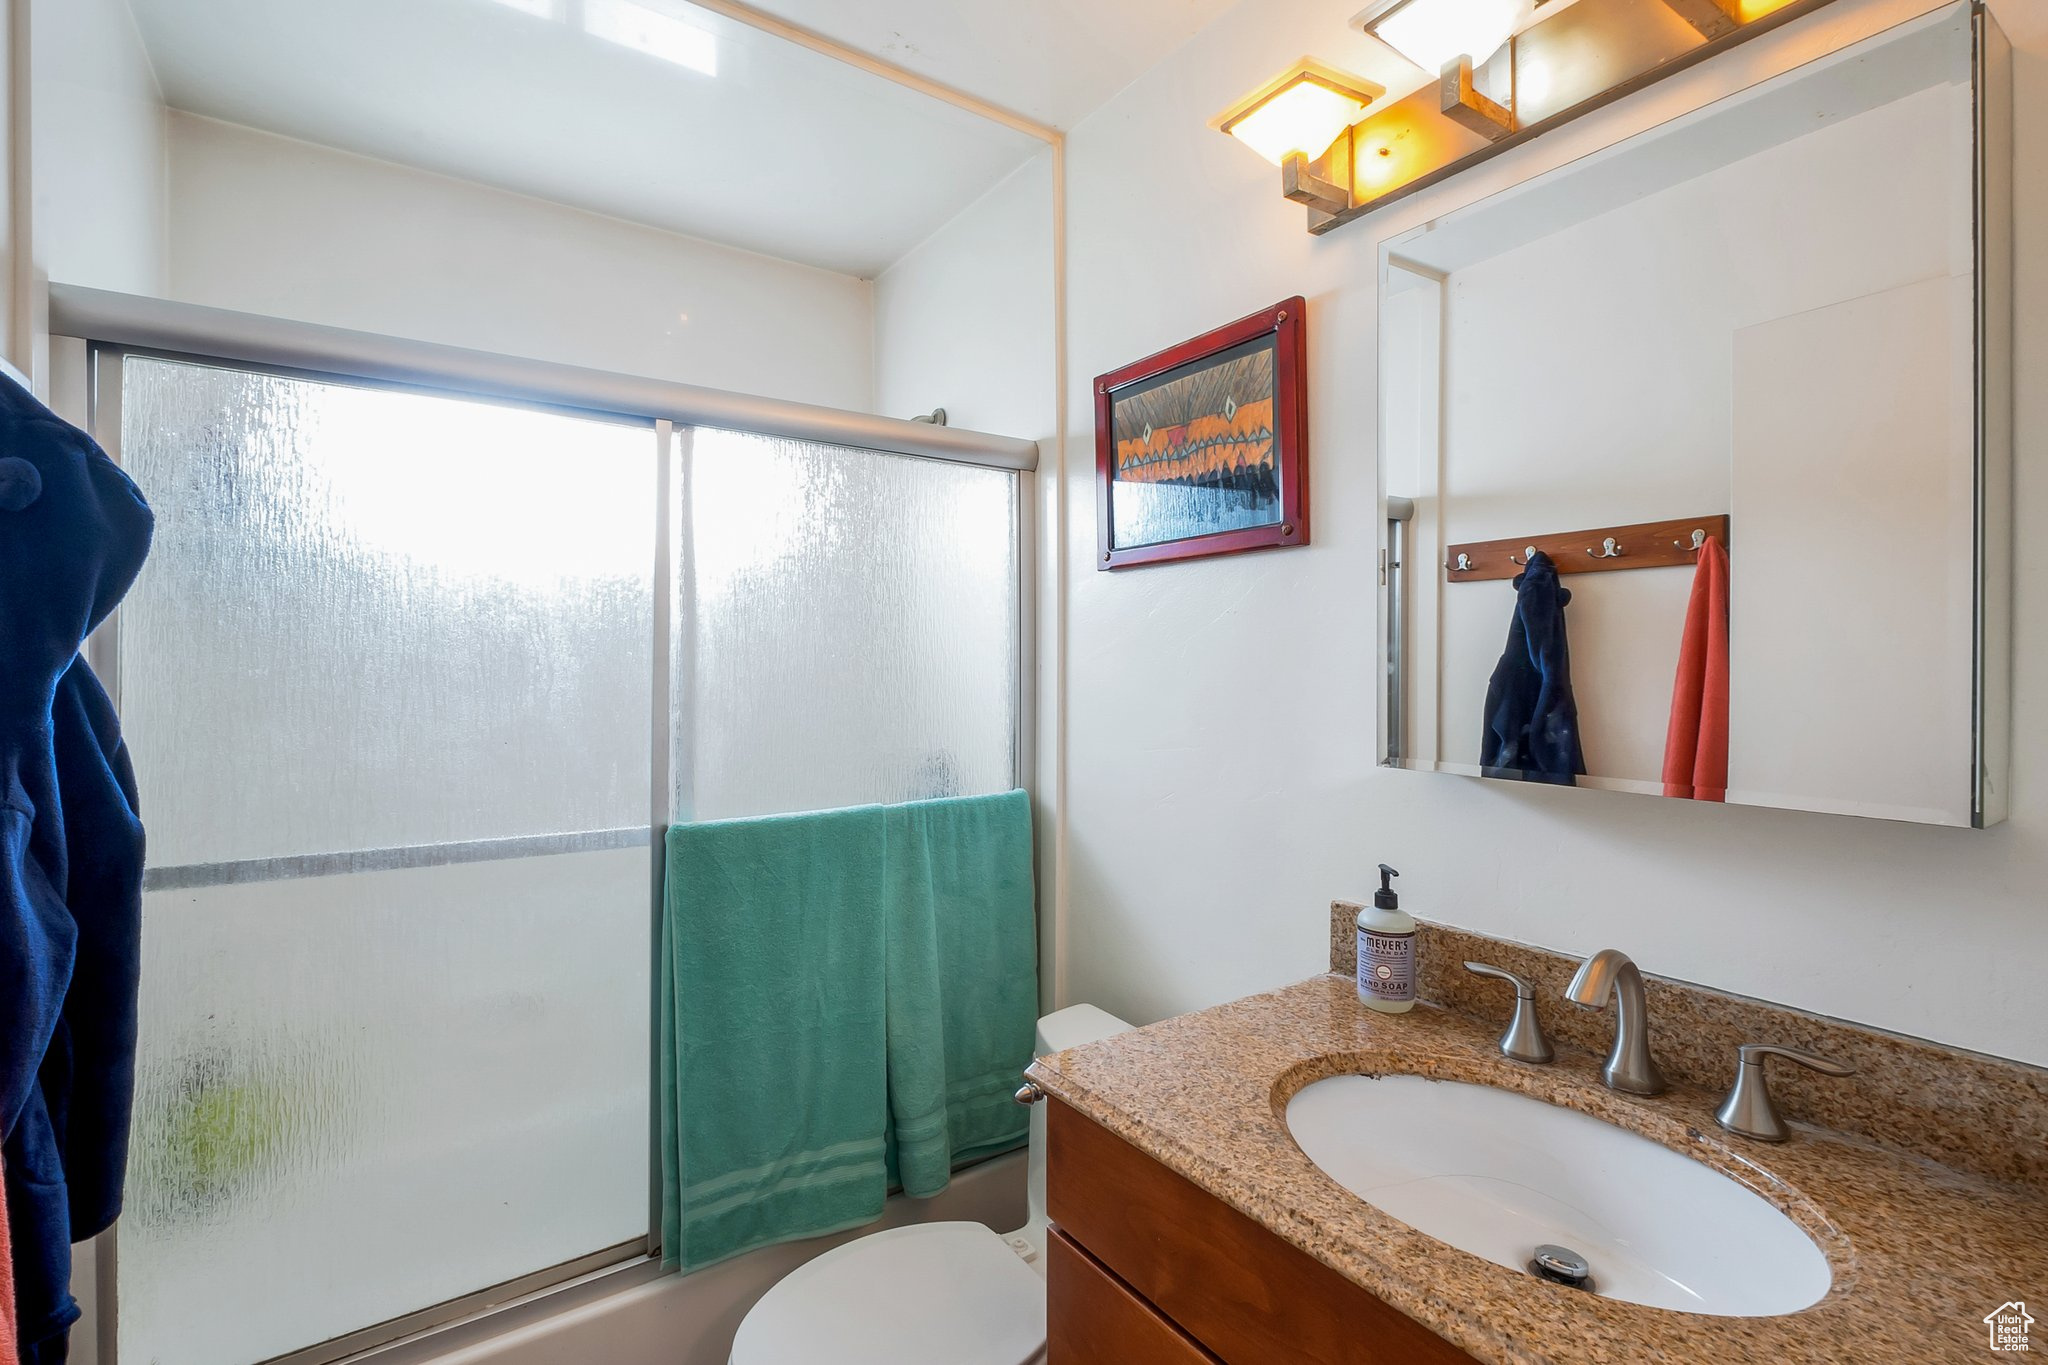 Main floor full bath/shower combo with glass sliding doors.